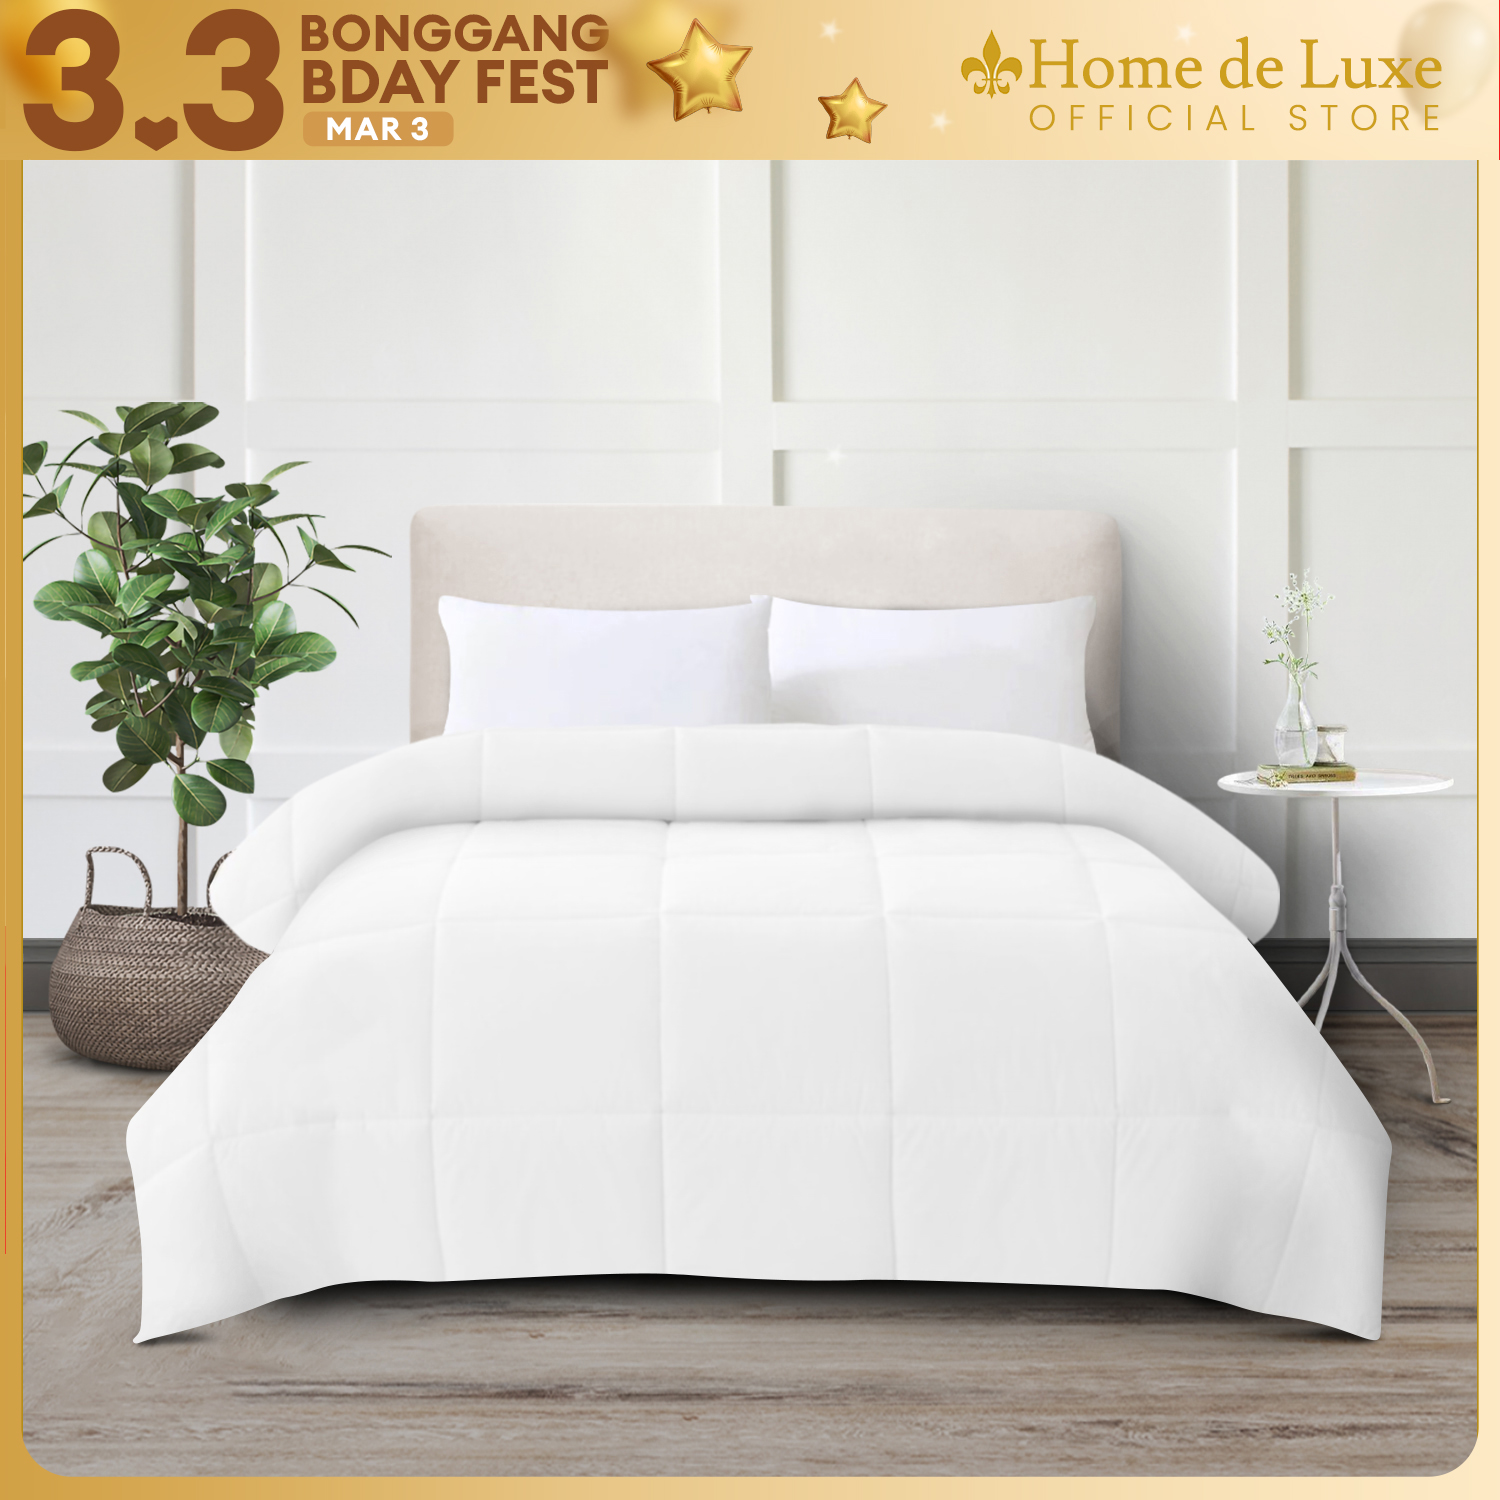 Home de Luxe  Deluxe Comforter Blanket - Plain